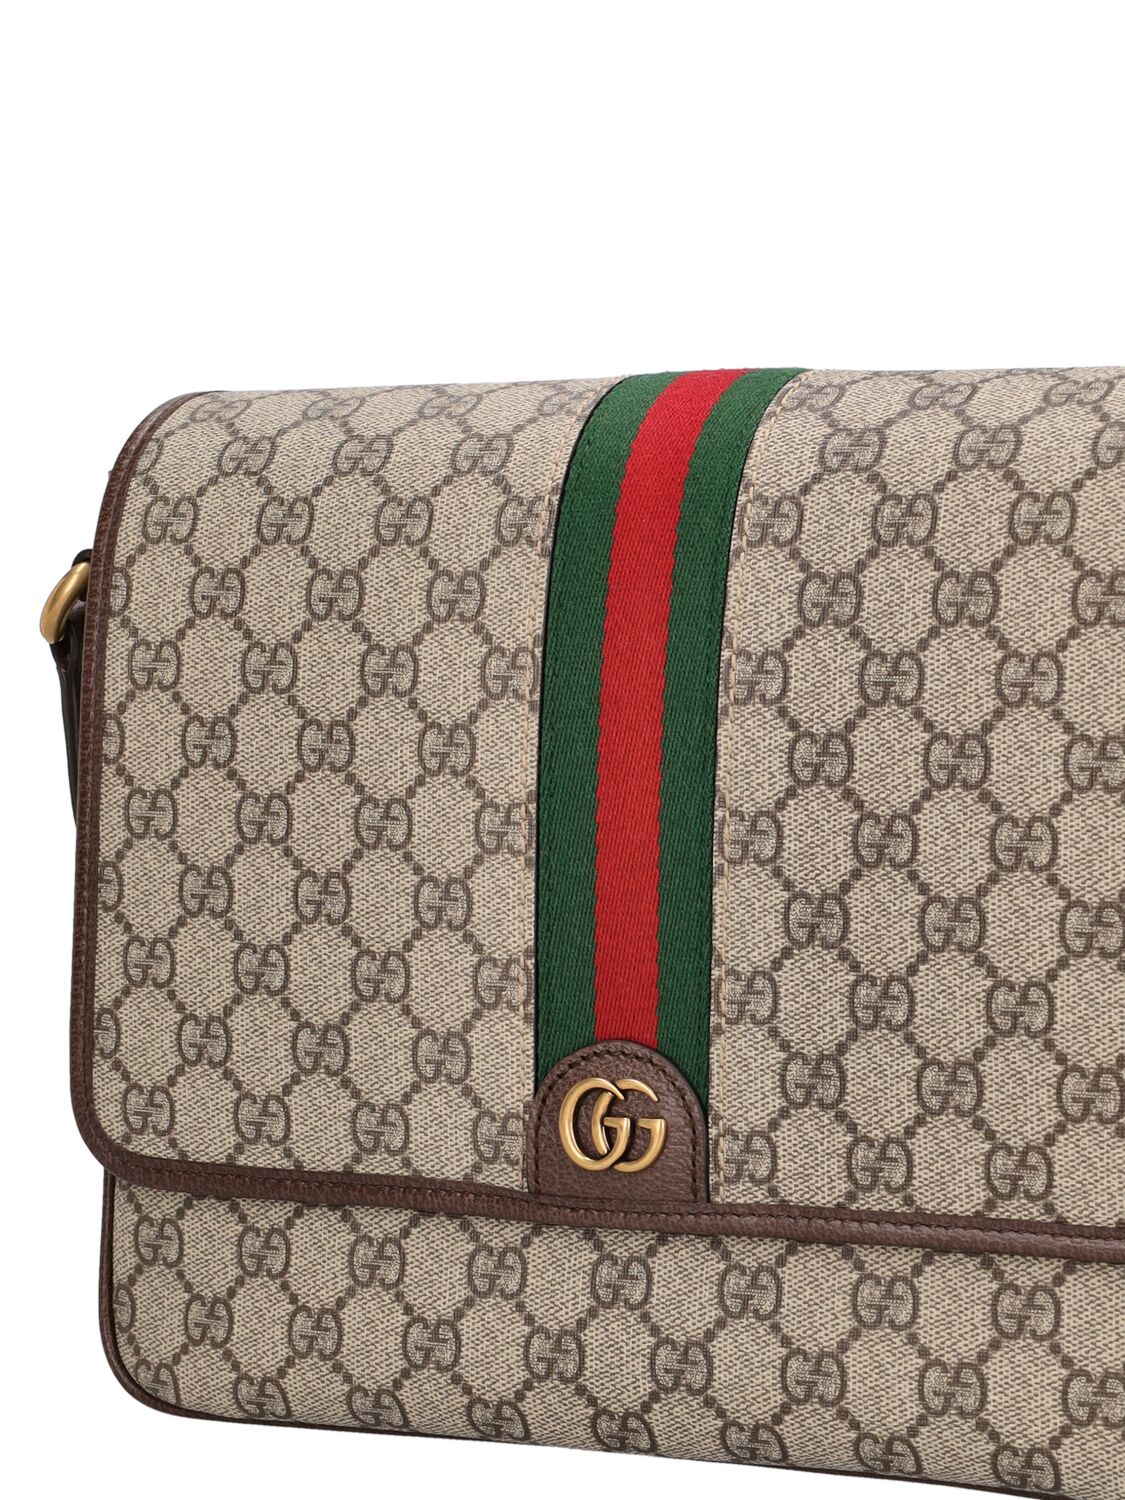 Shop Gucci Ophidia Gg Supreme Medium Crossbody Bag In Beige,ebony